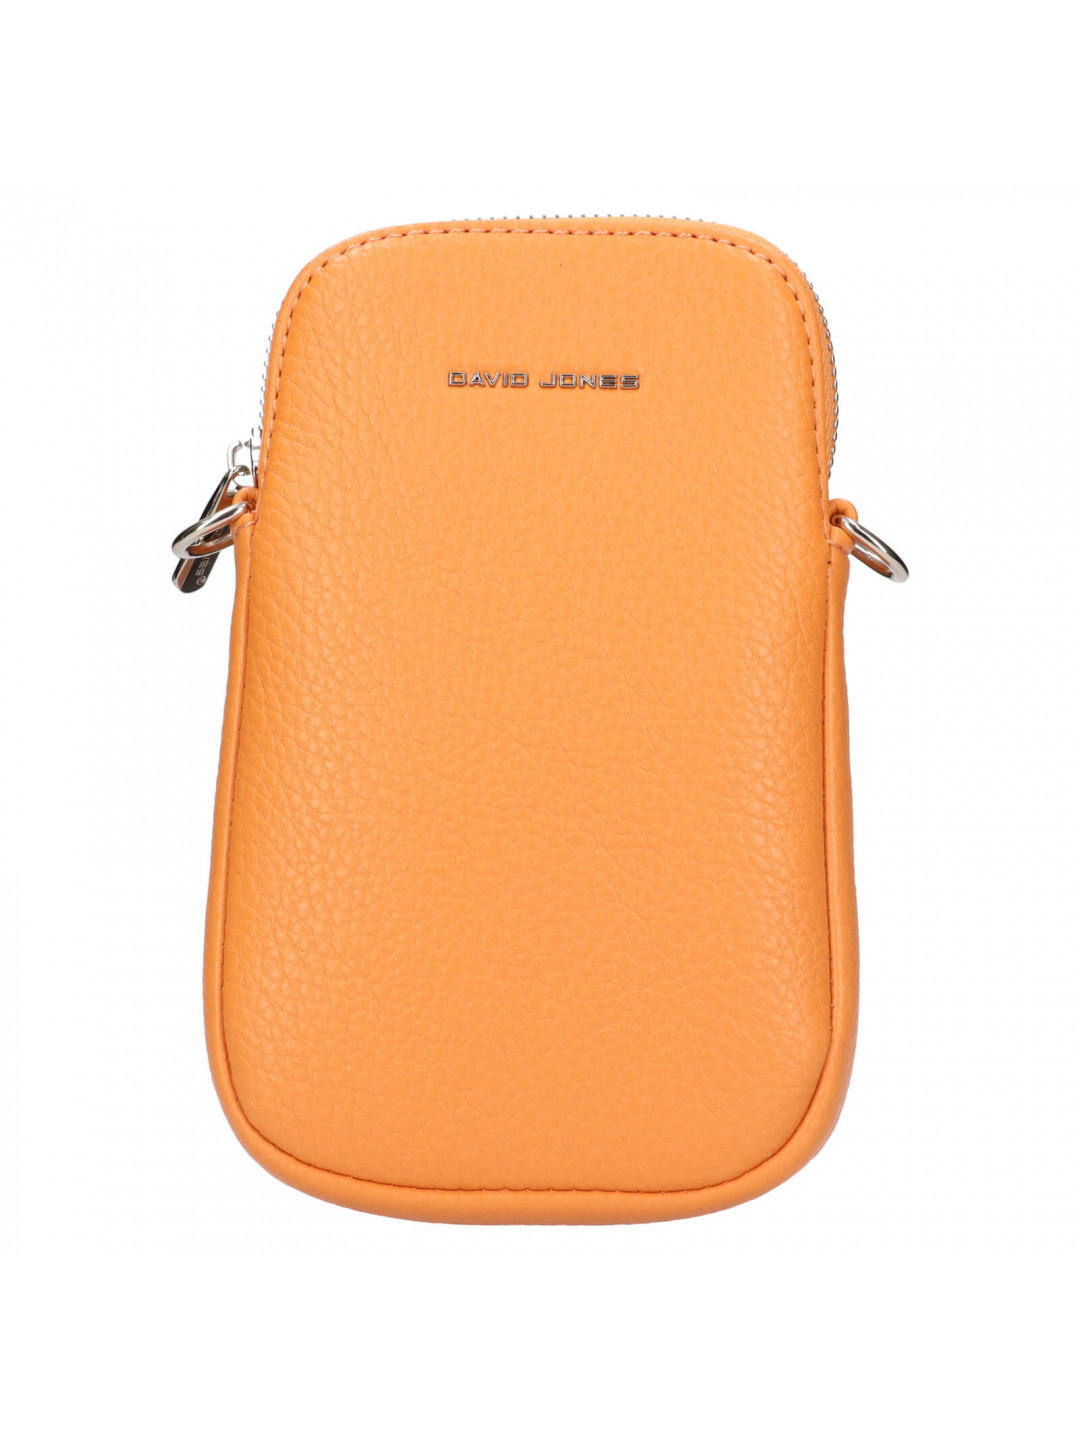 Dámská kabelka na mobil a doklady David Jones Alexa – oranžová